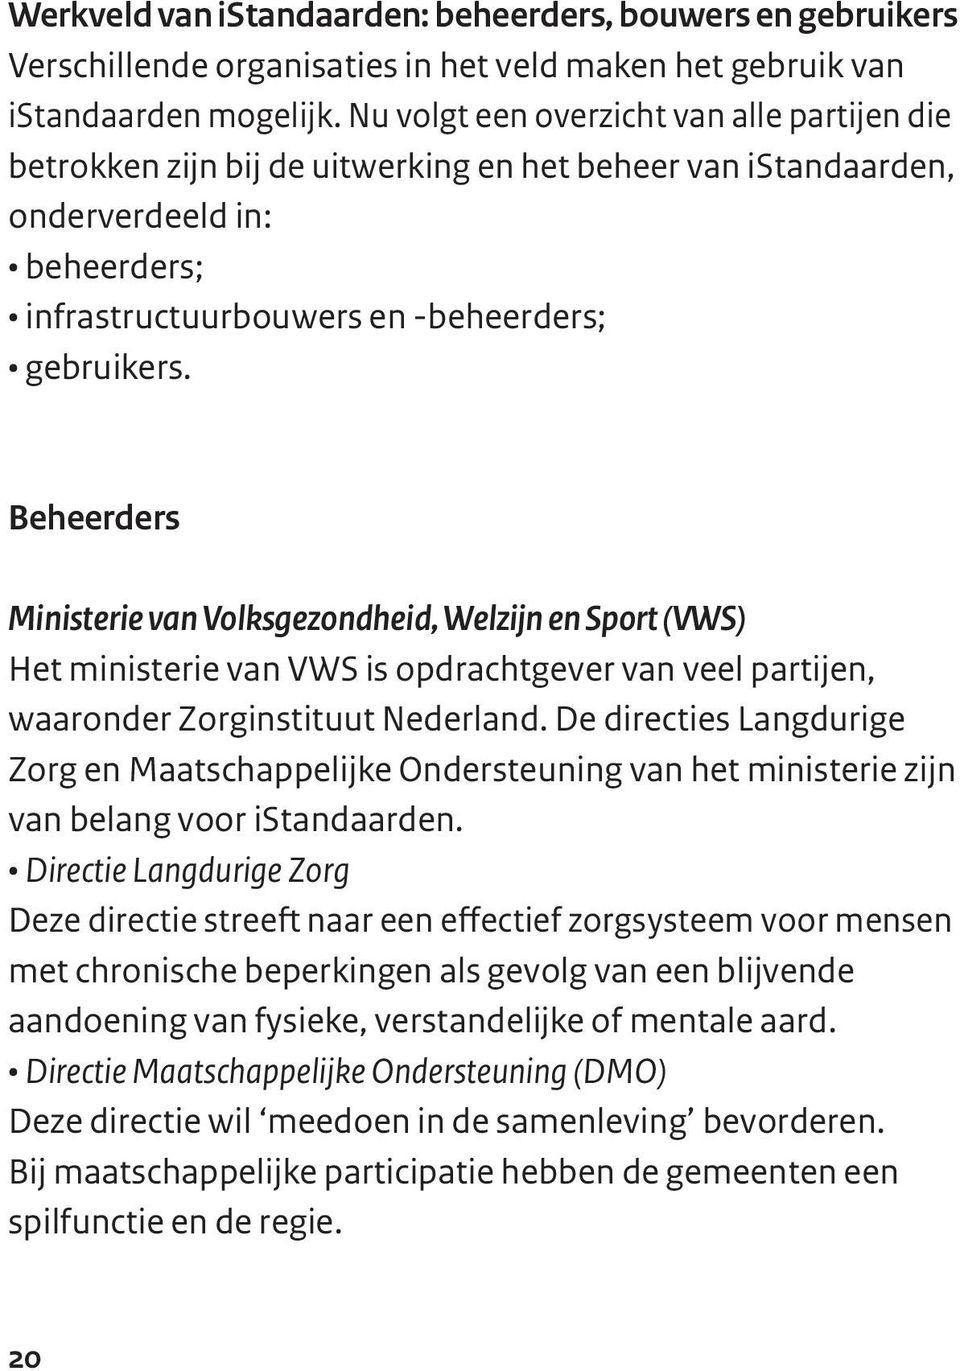 Beheerders Ministerie van Volksgezondheid, Welzijn en Sport (VWS) Het ministerie van VWS is opdrachtgever van veel partijen, waaronder Zorginstituut Nederland.